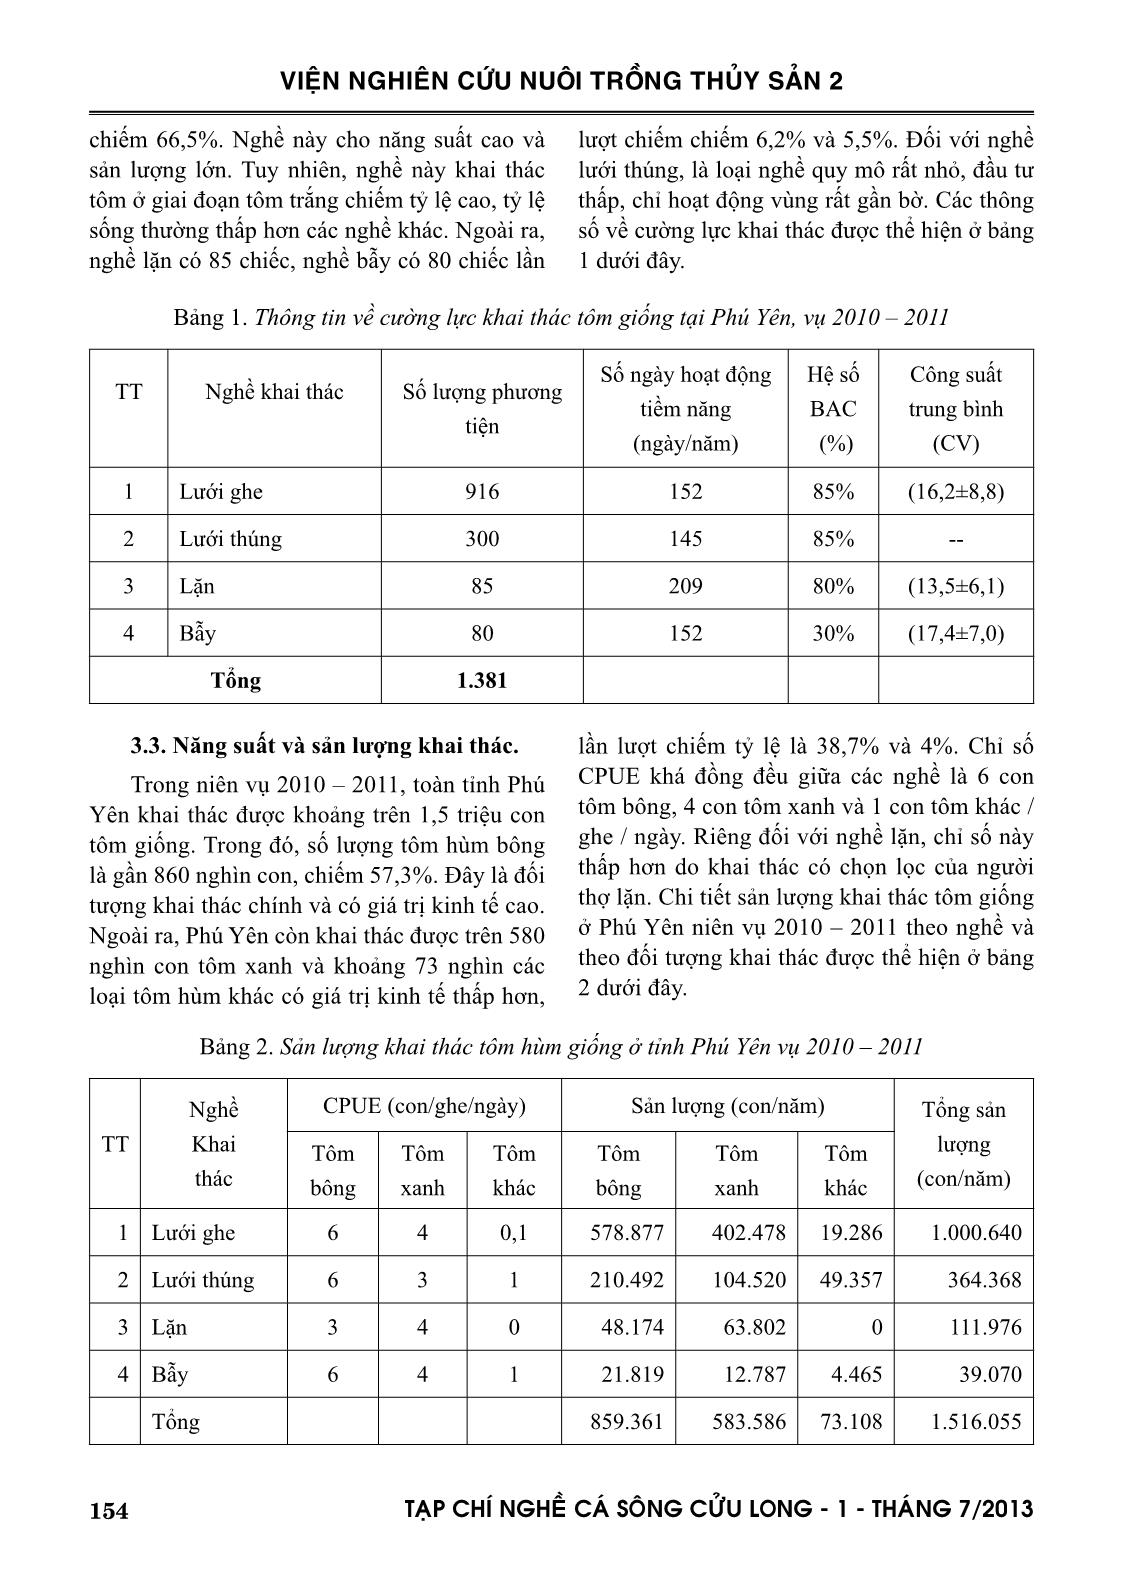 Tình hình khai thác tôm hùm giống ở tỉnh Phú Yên trang 3